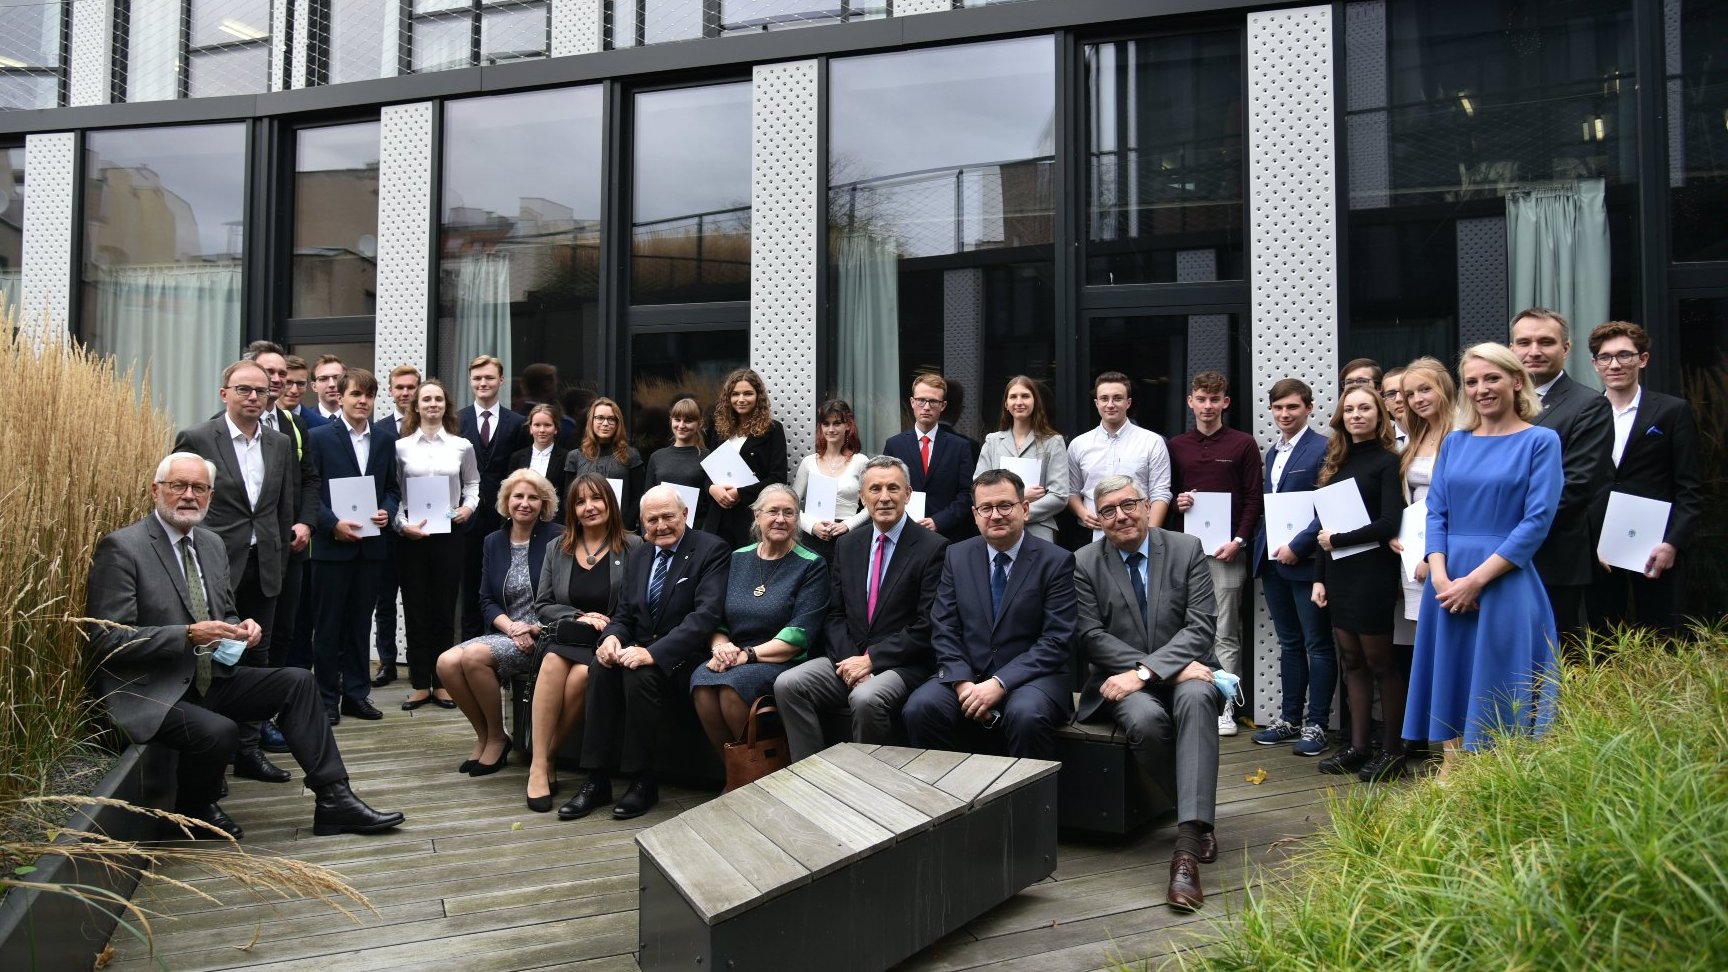 Zdjęcie grupowe laureatów i finalistów olimpiad oraz rektorów uczelni i pracowników urzędu miasta.